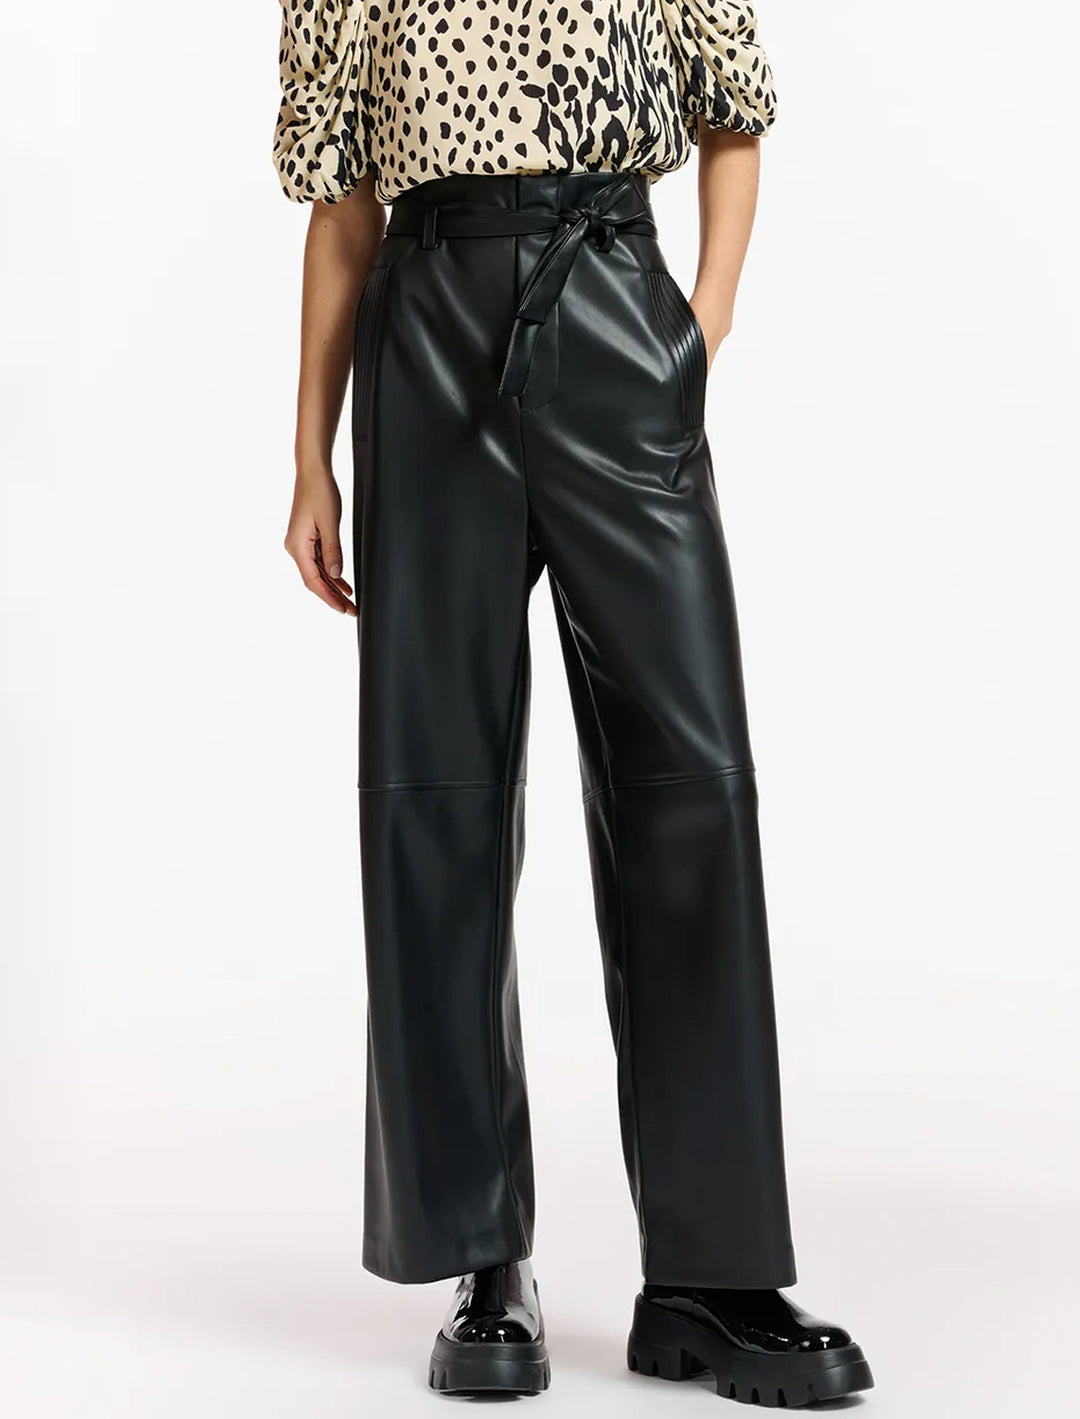 Model wearing Essentiel Antwerp's encounter faux leather pants in black.